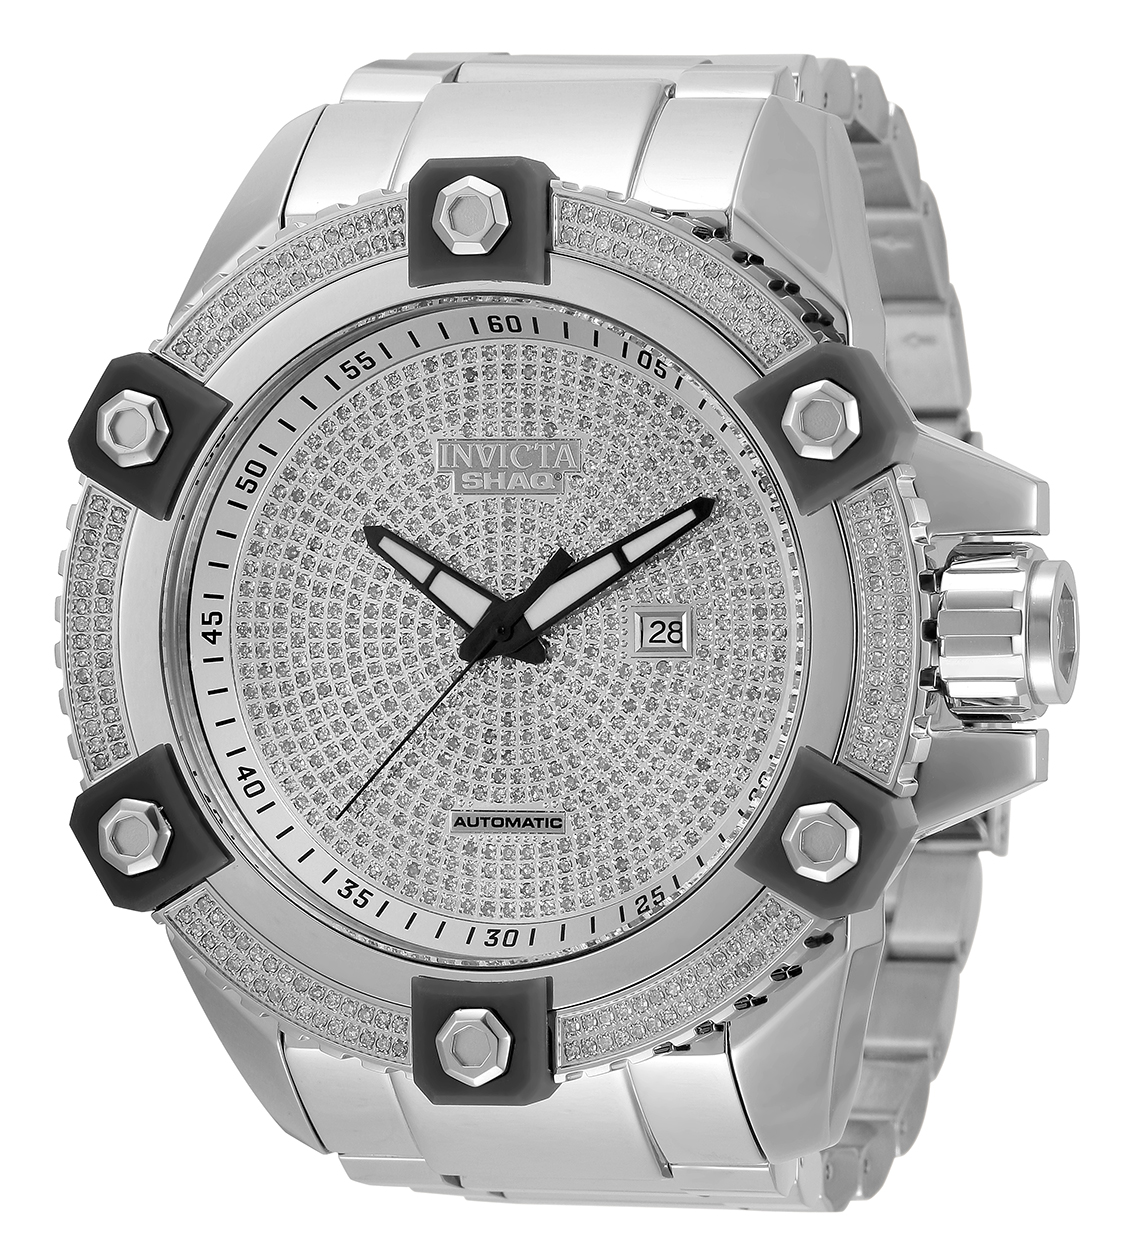 Invicta SHAQ 3.42 Carat Diamond Automatic Men's Watch - 60mm, Steel (33723)